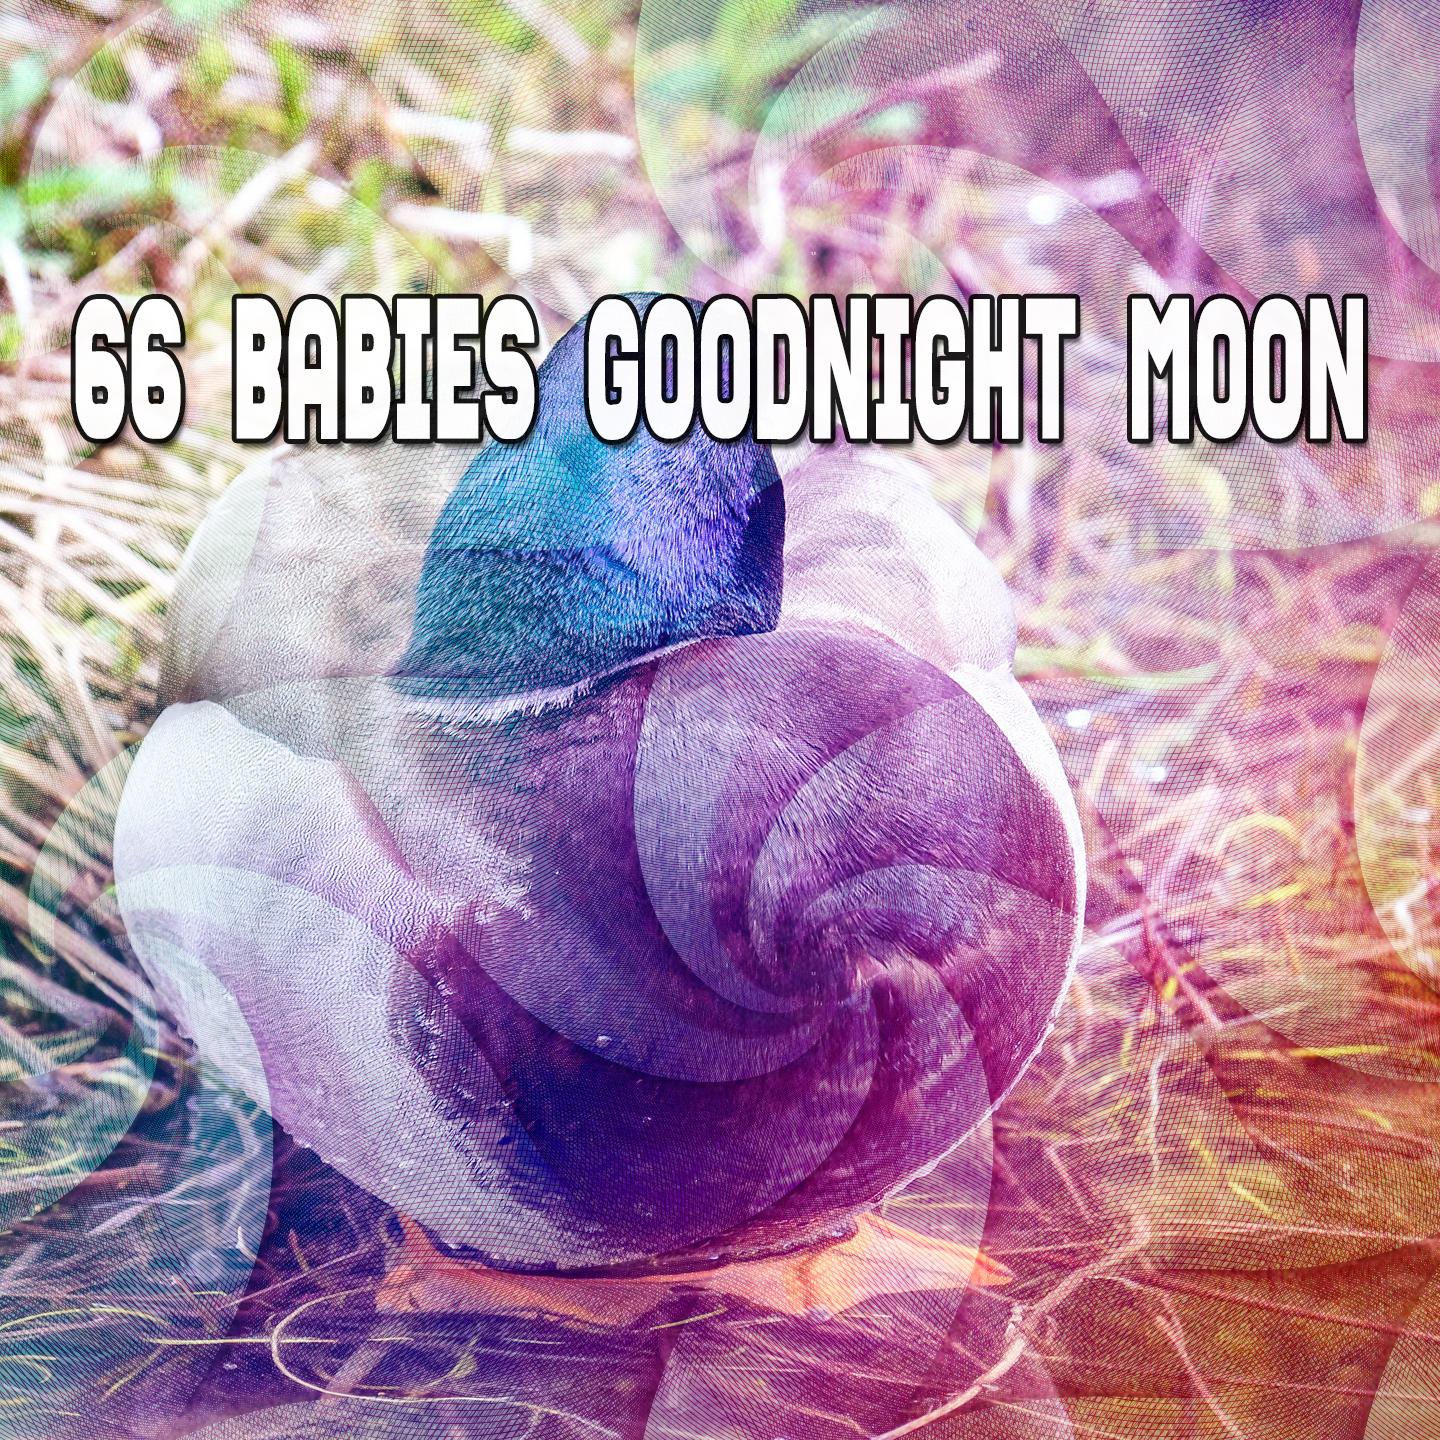 66 Babies Goodnight Moon